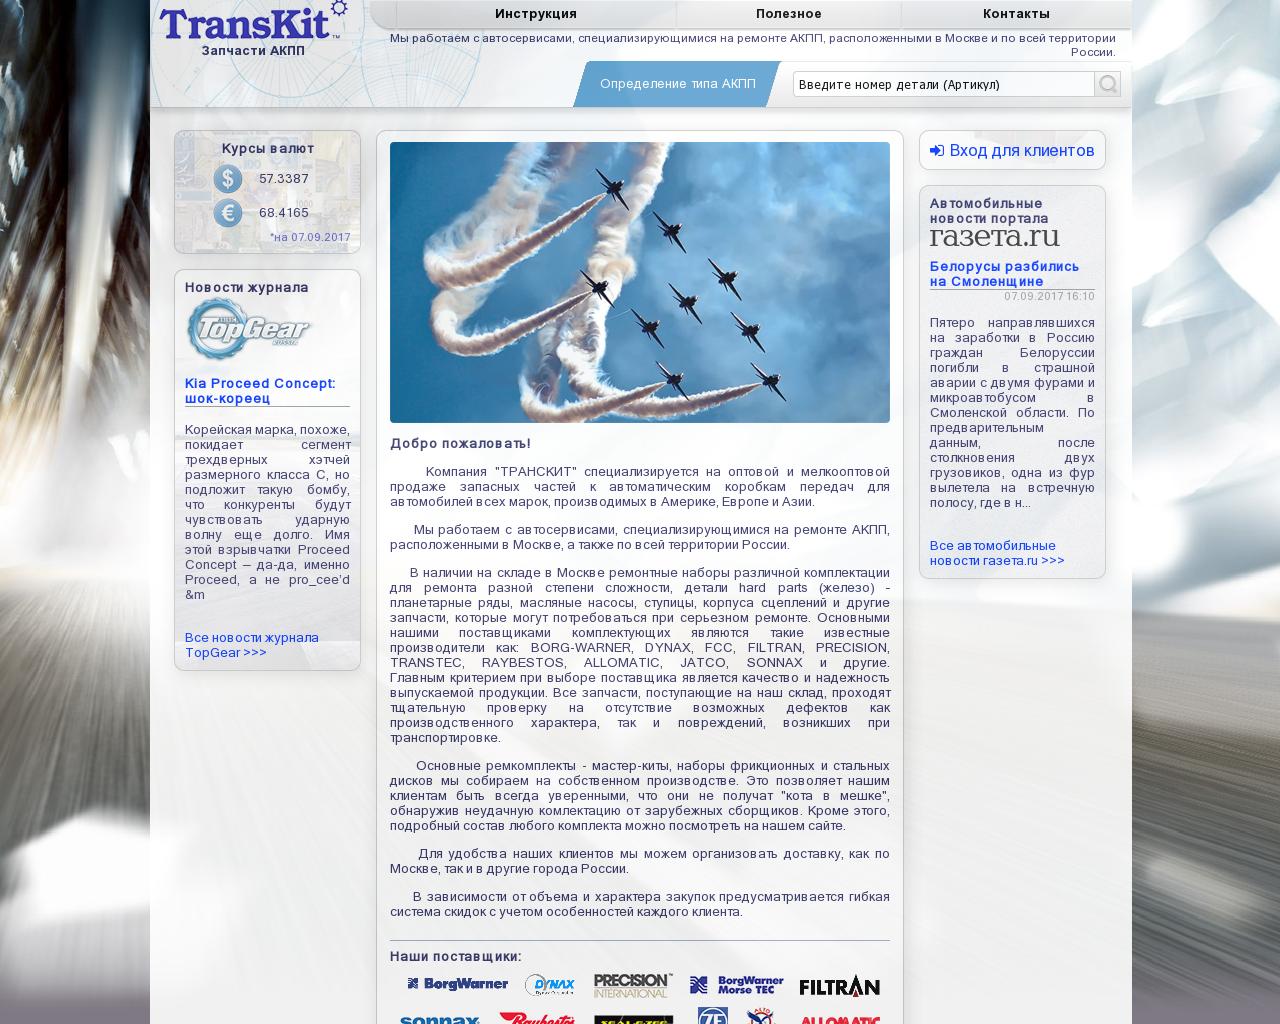 Изображение сайта transkit.ru в разрешении 1280x1024